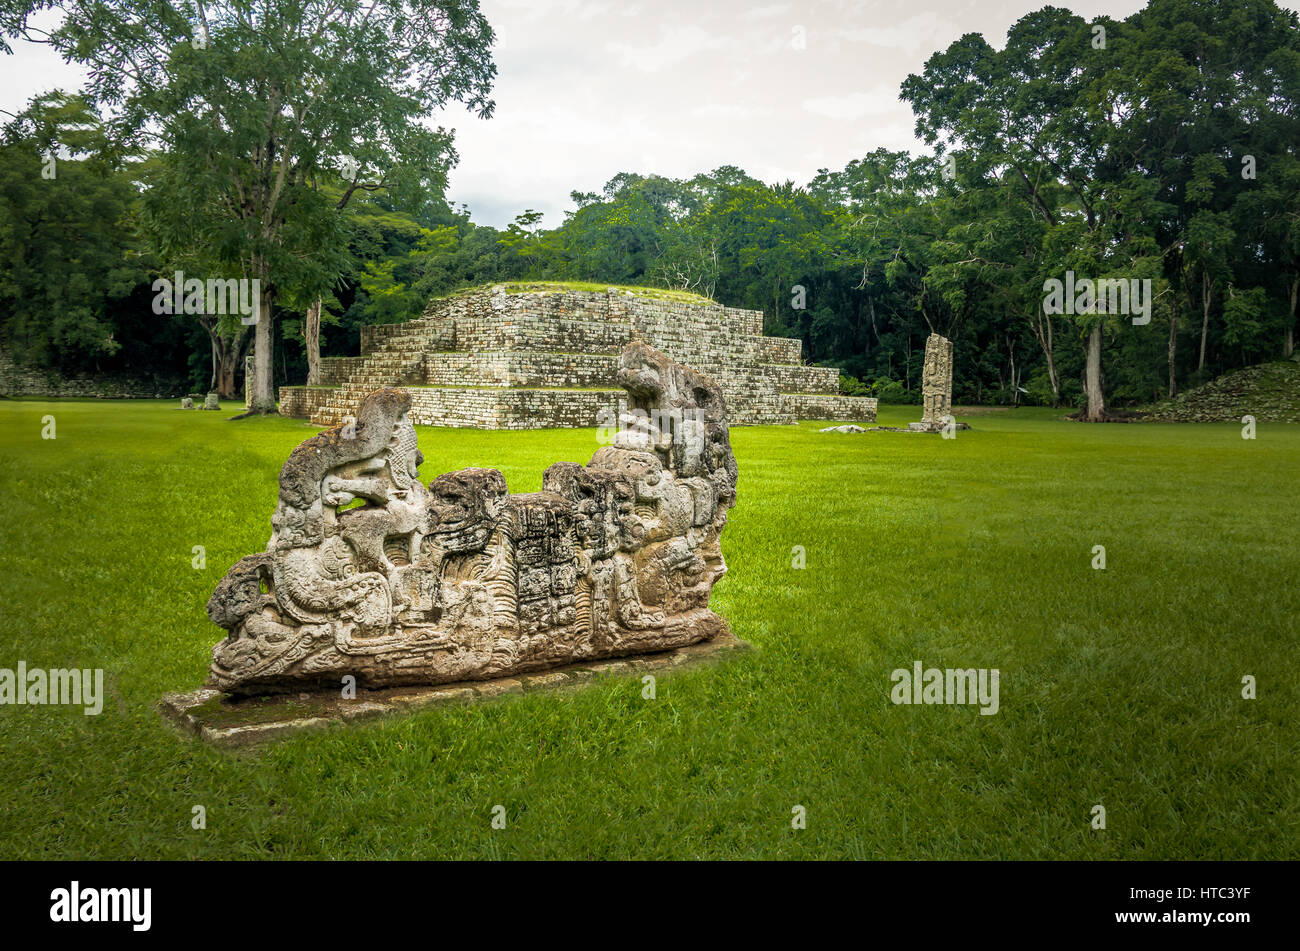 Pyramide und Stella in großen Plaza von Maya-Ruinen - Ausgrabungsstätte Copan, Honduras Stockfoto